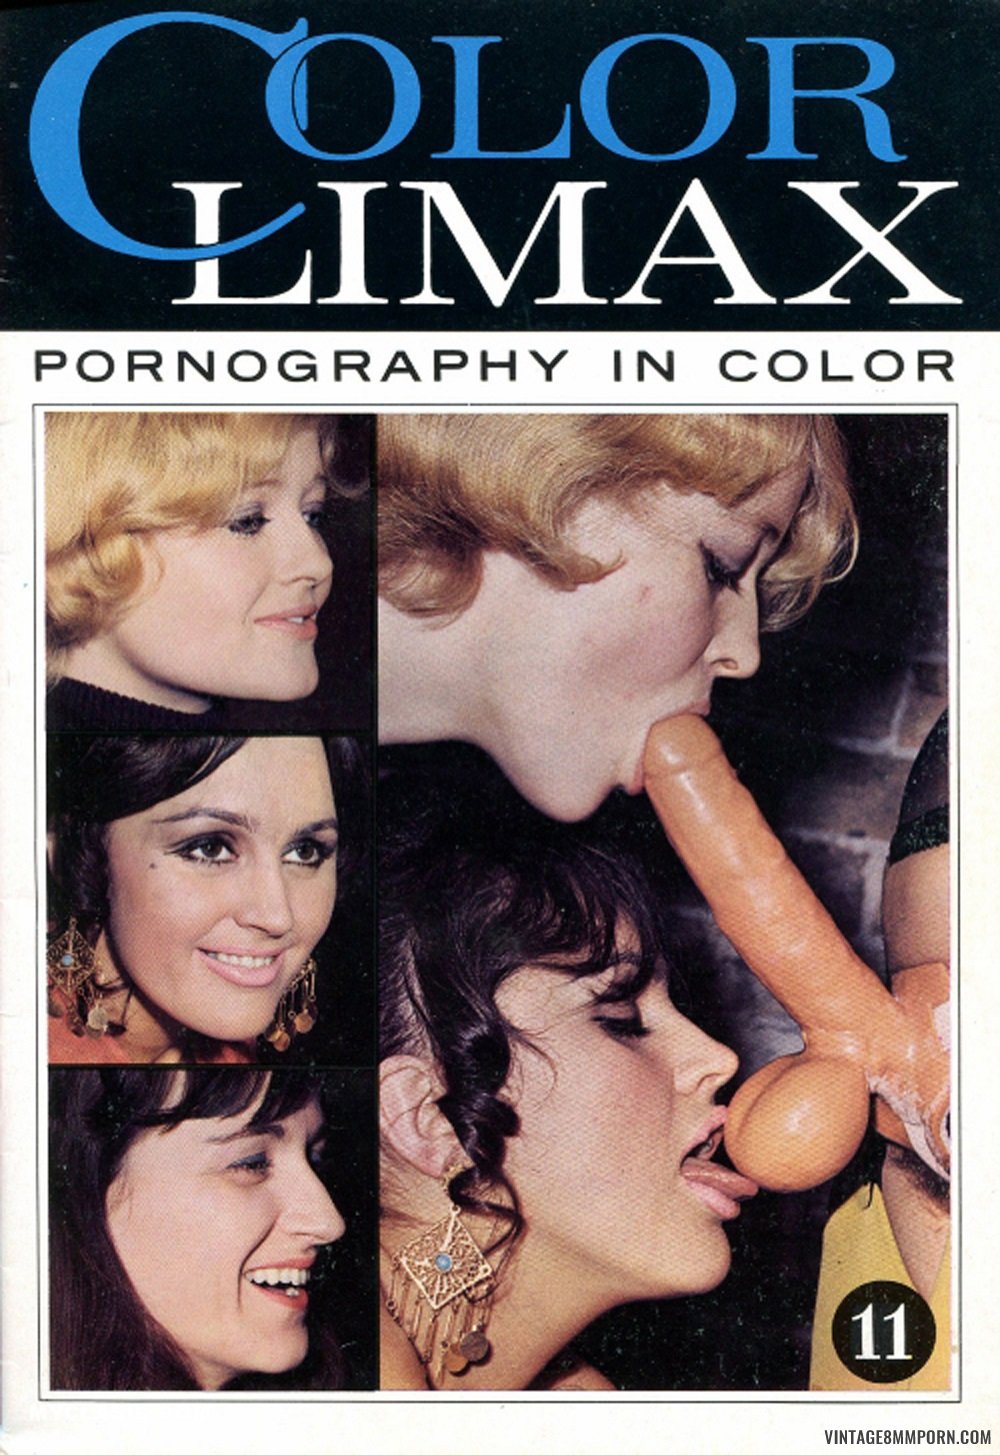 Vintage danish color climax